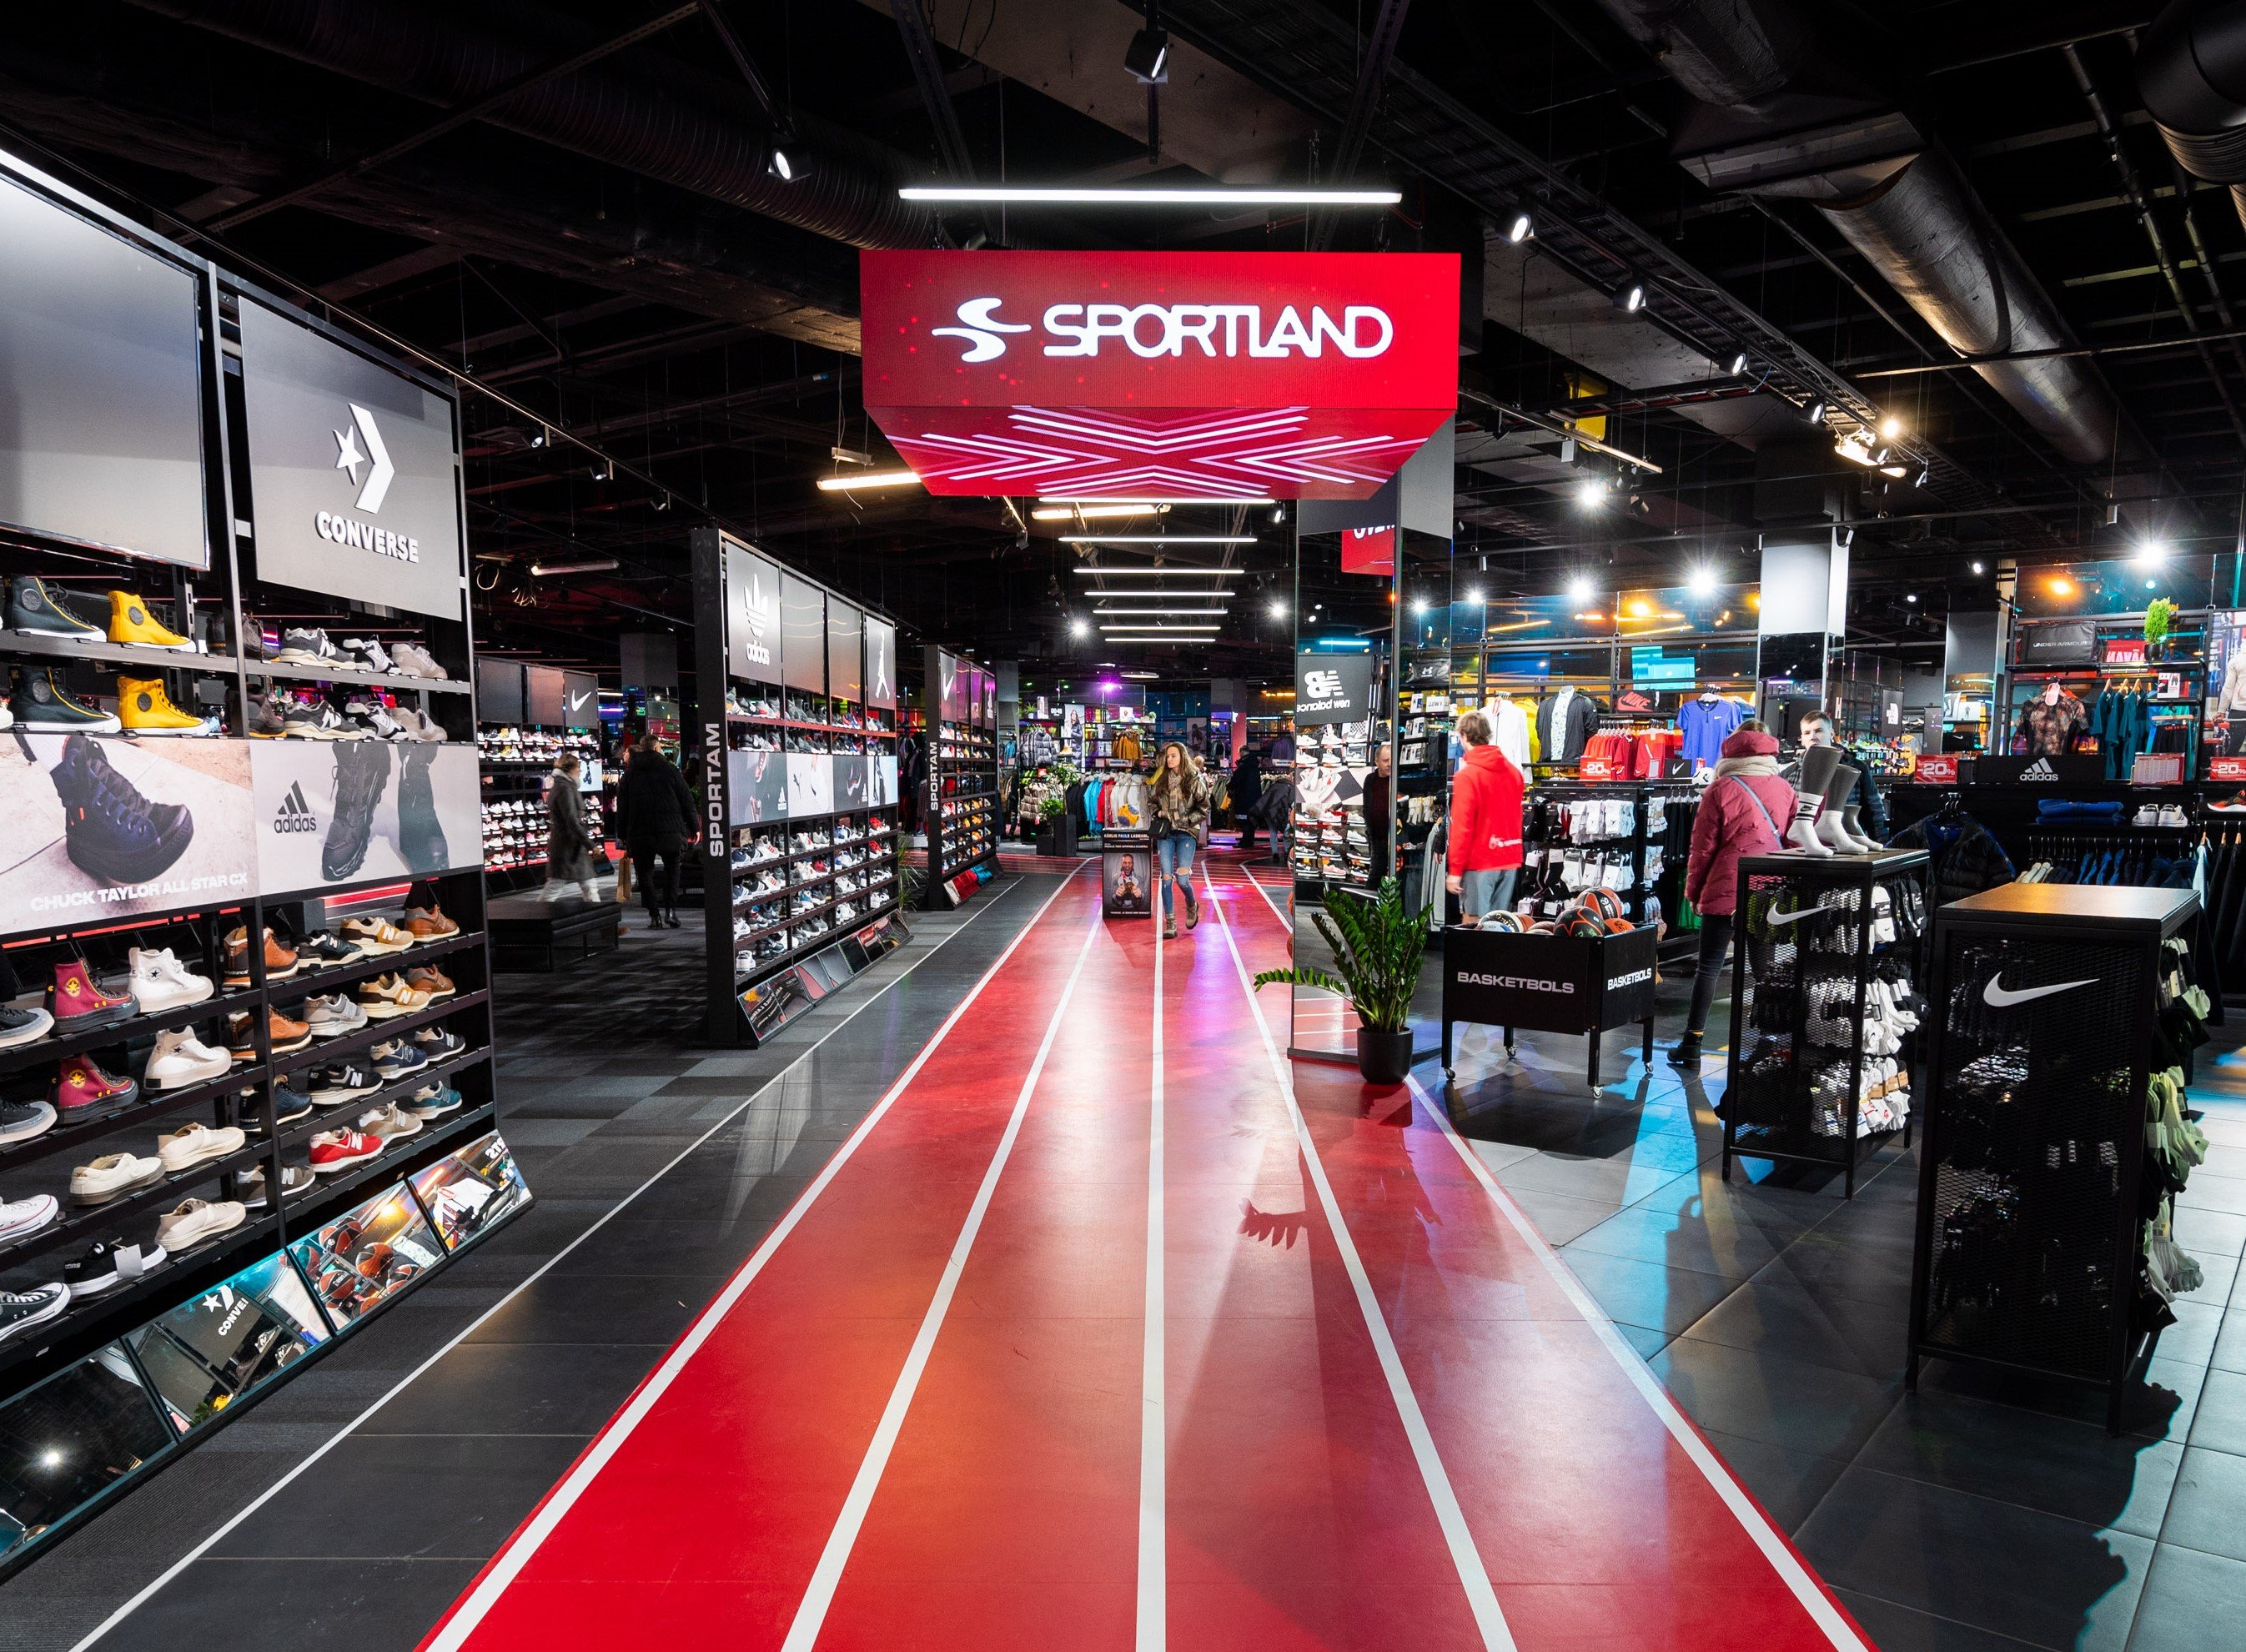 Tirdzniecības centrā “Spice” atvērts lielākais “Sportland” veikals Latvijā